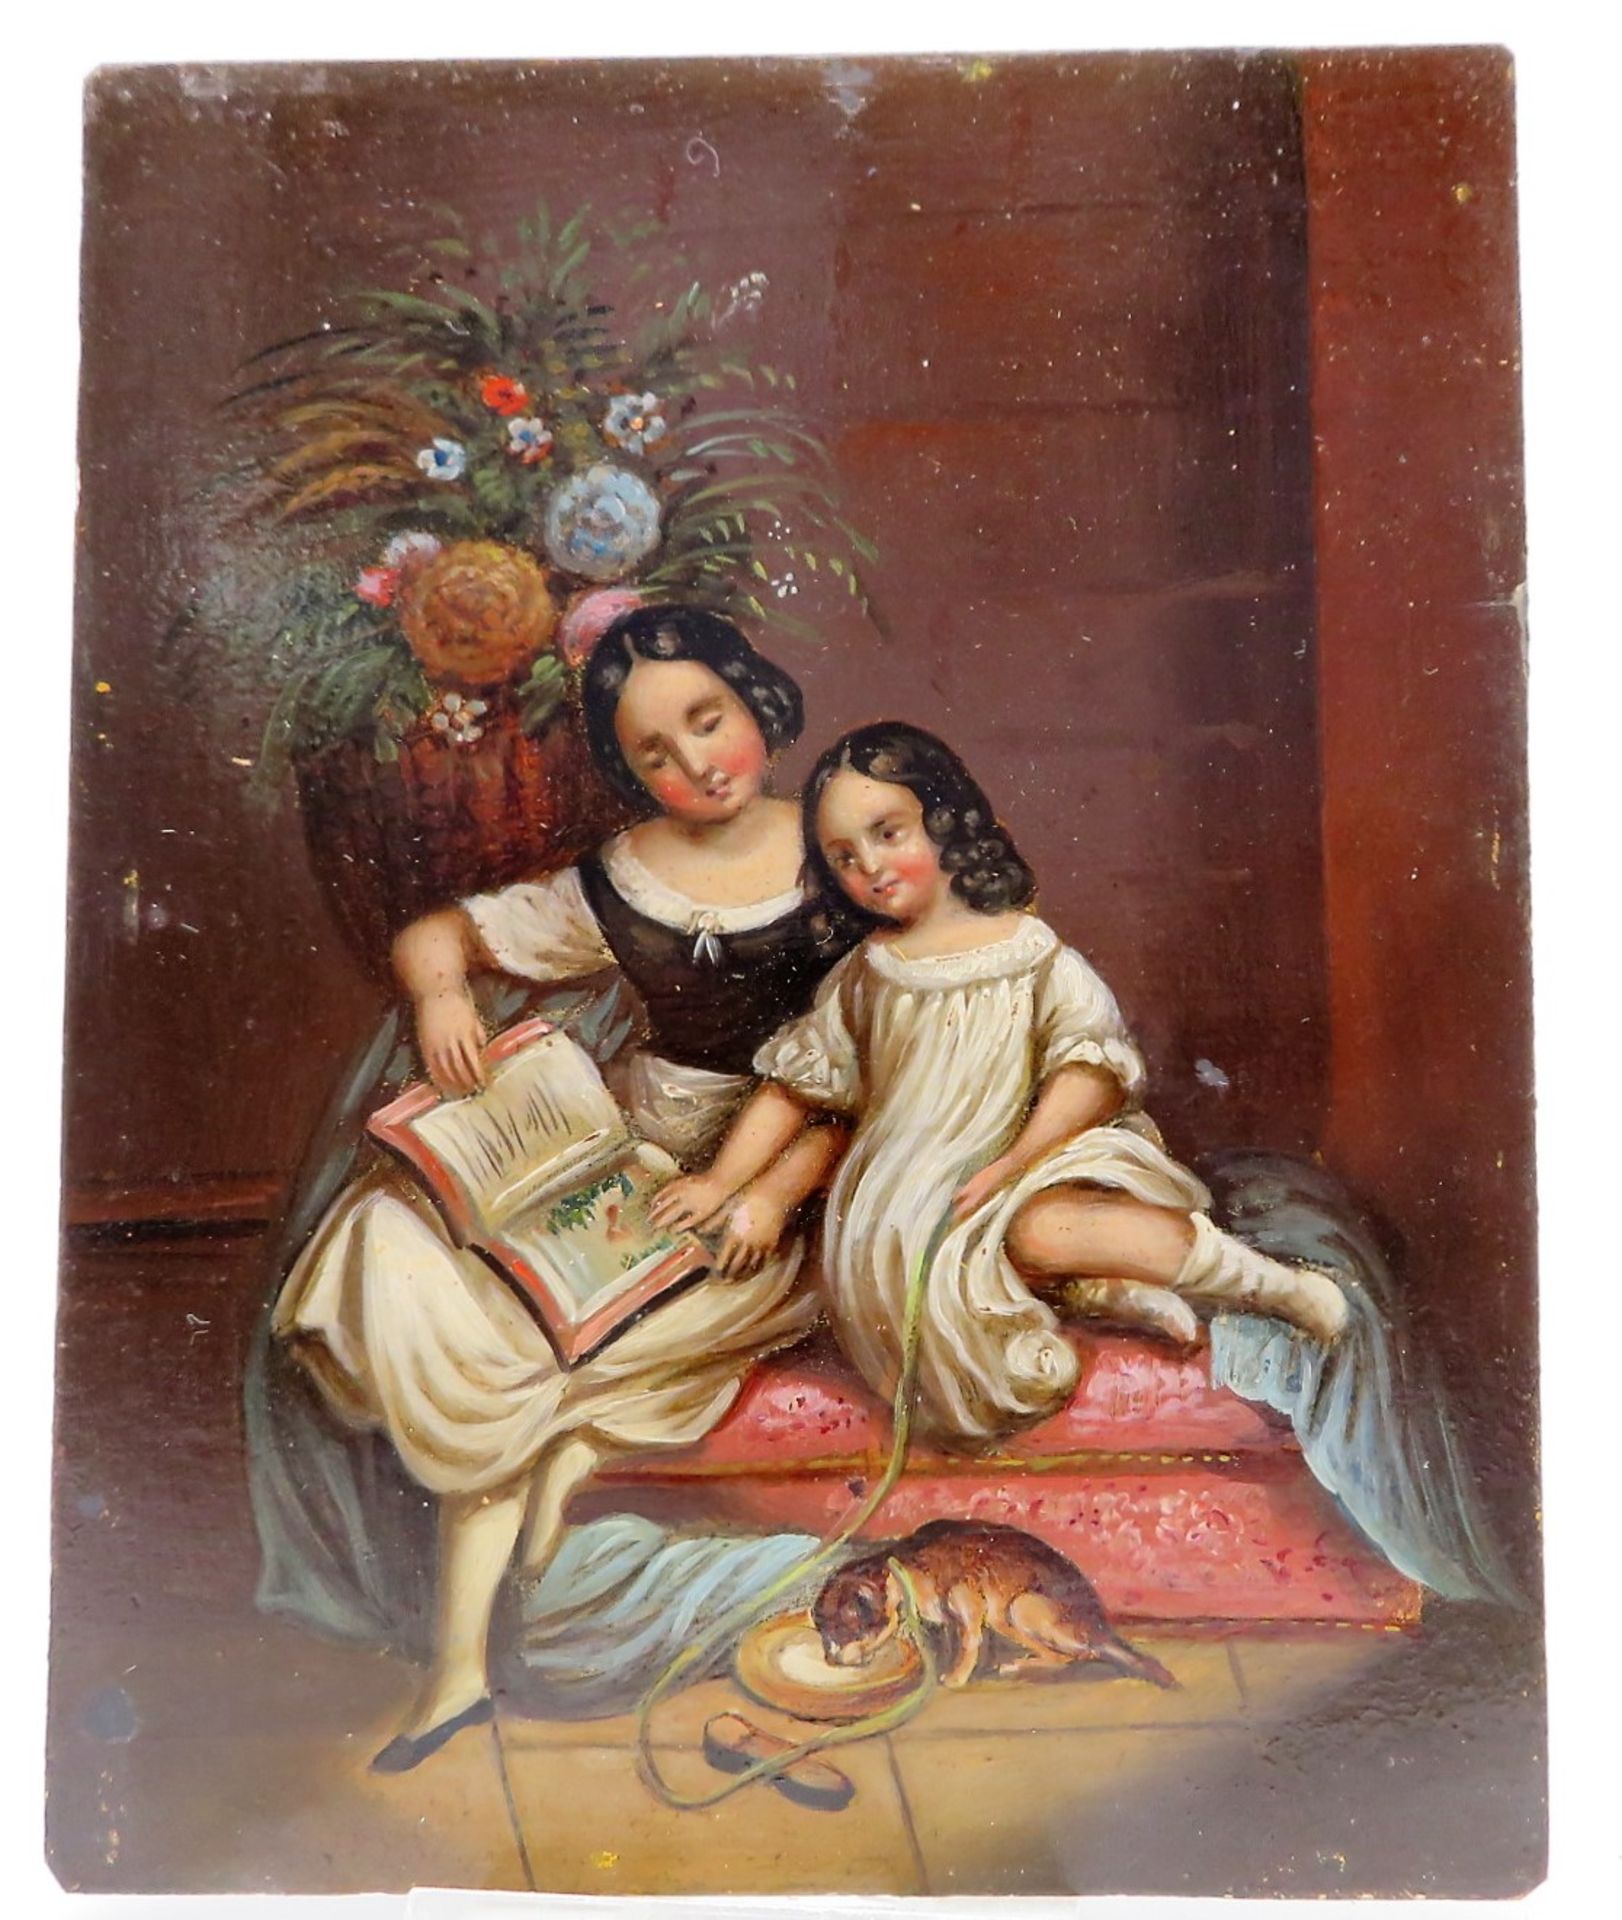 Unbekannt, Biedermeier, 1. Hälfte 19. Jahrhundert, "Zwei Mädchen beim Lesen", Öl/Blech, 13 x 10,5 c